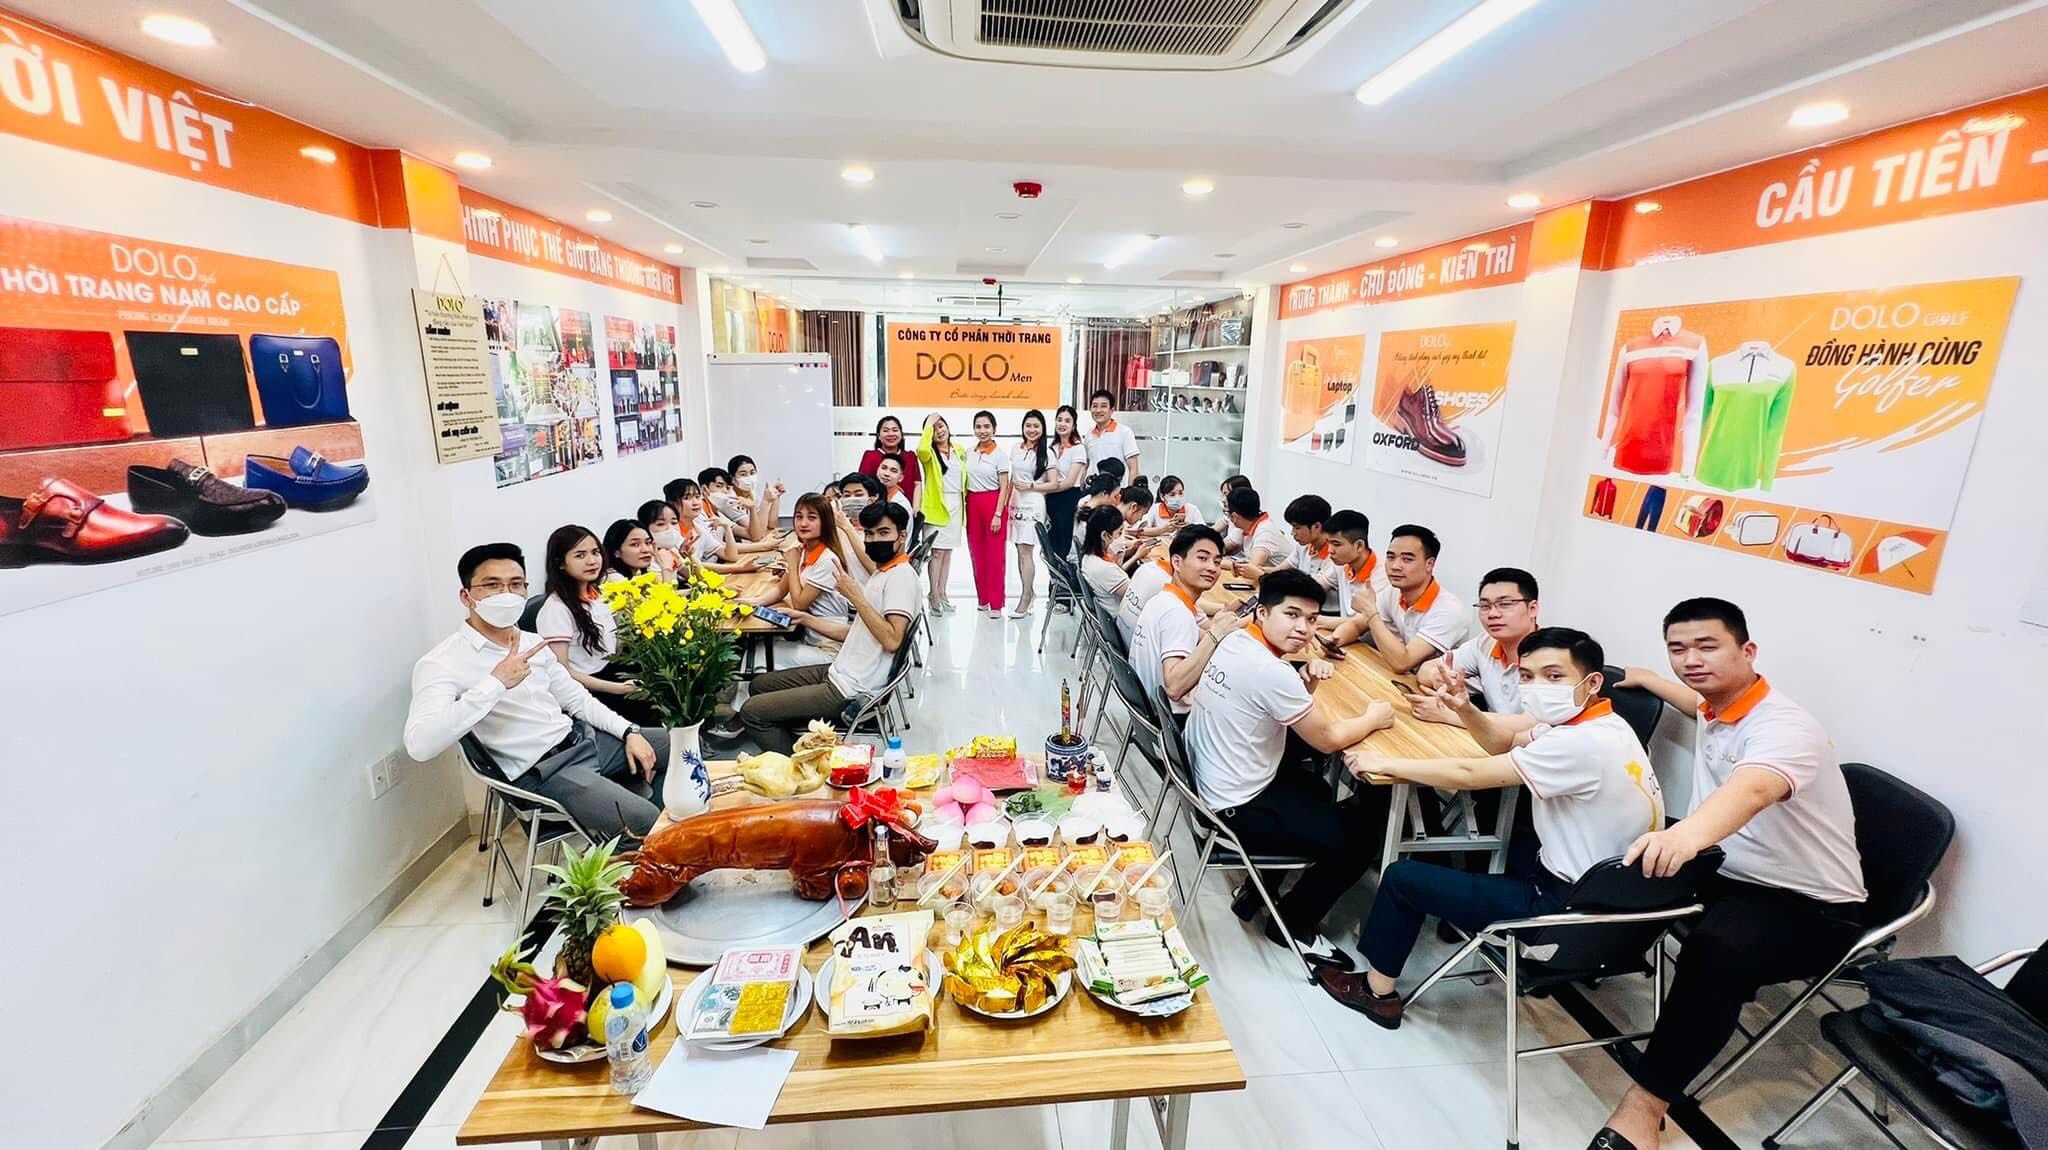 DOLO.,JSC khai trương văn phòng mới tại 201 Nguyễn Ngọc Vũ, Hà Nội